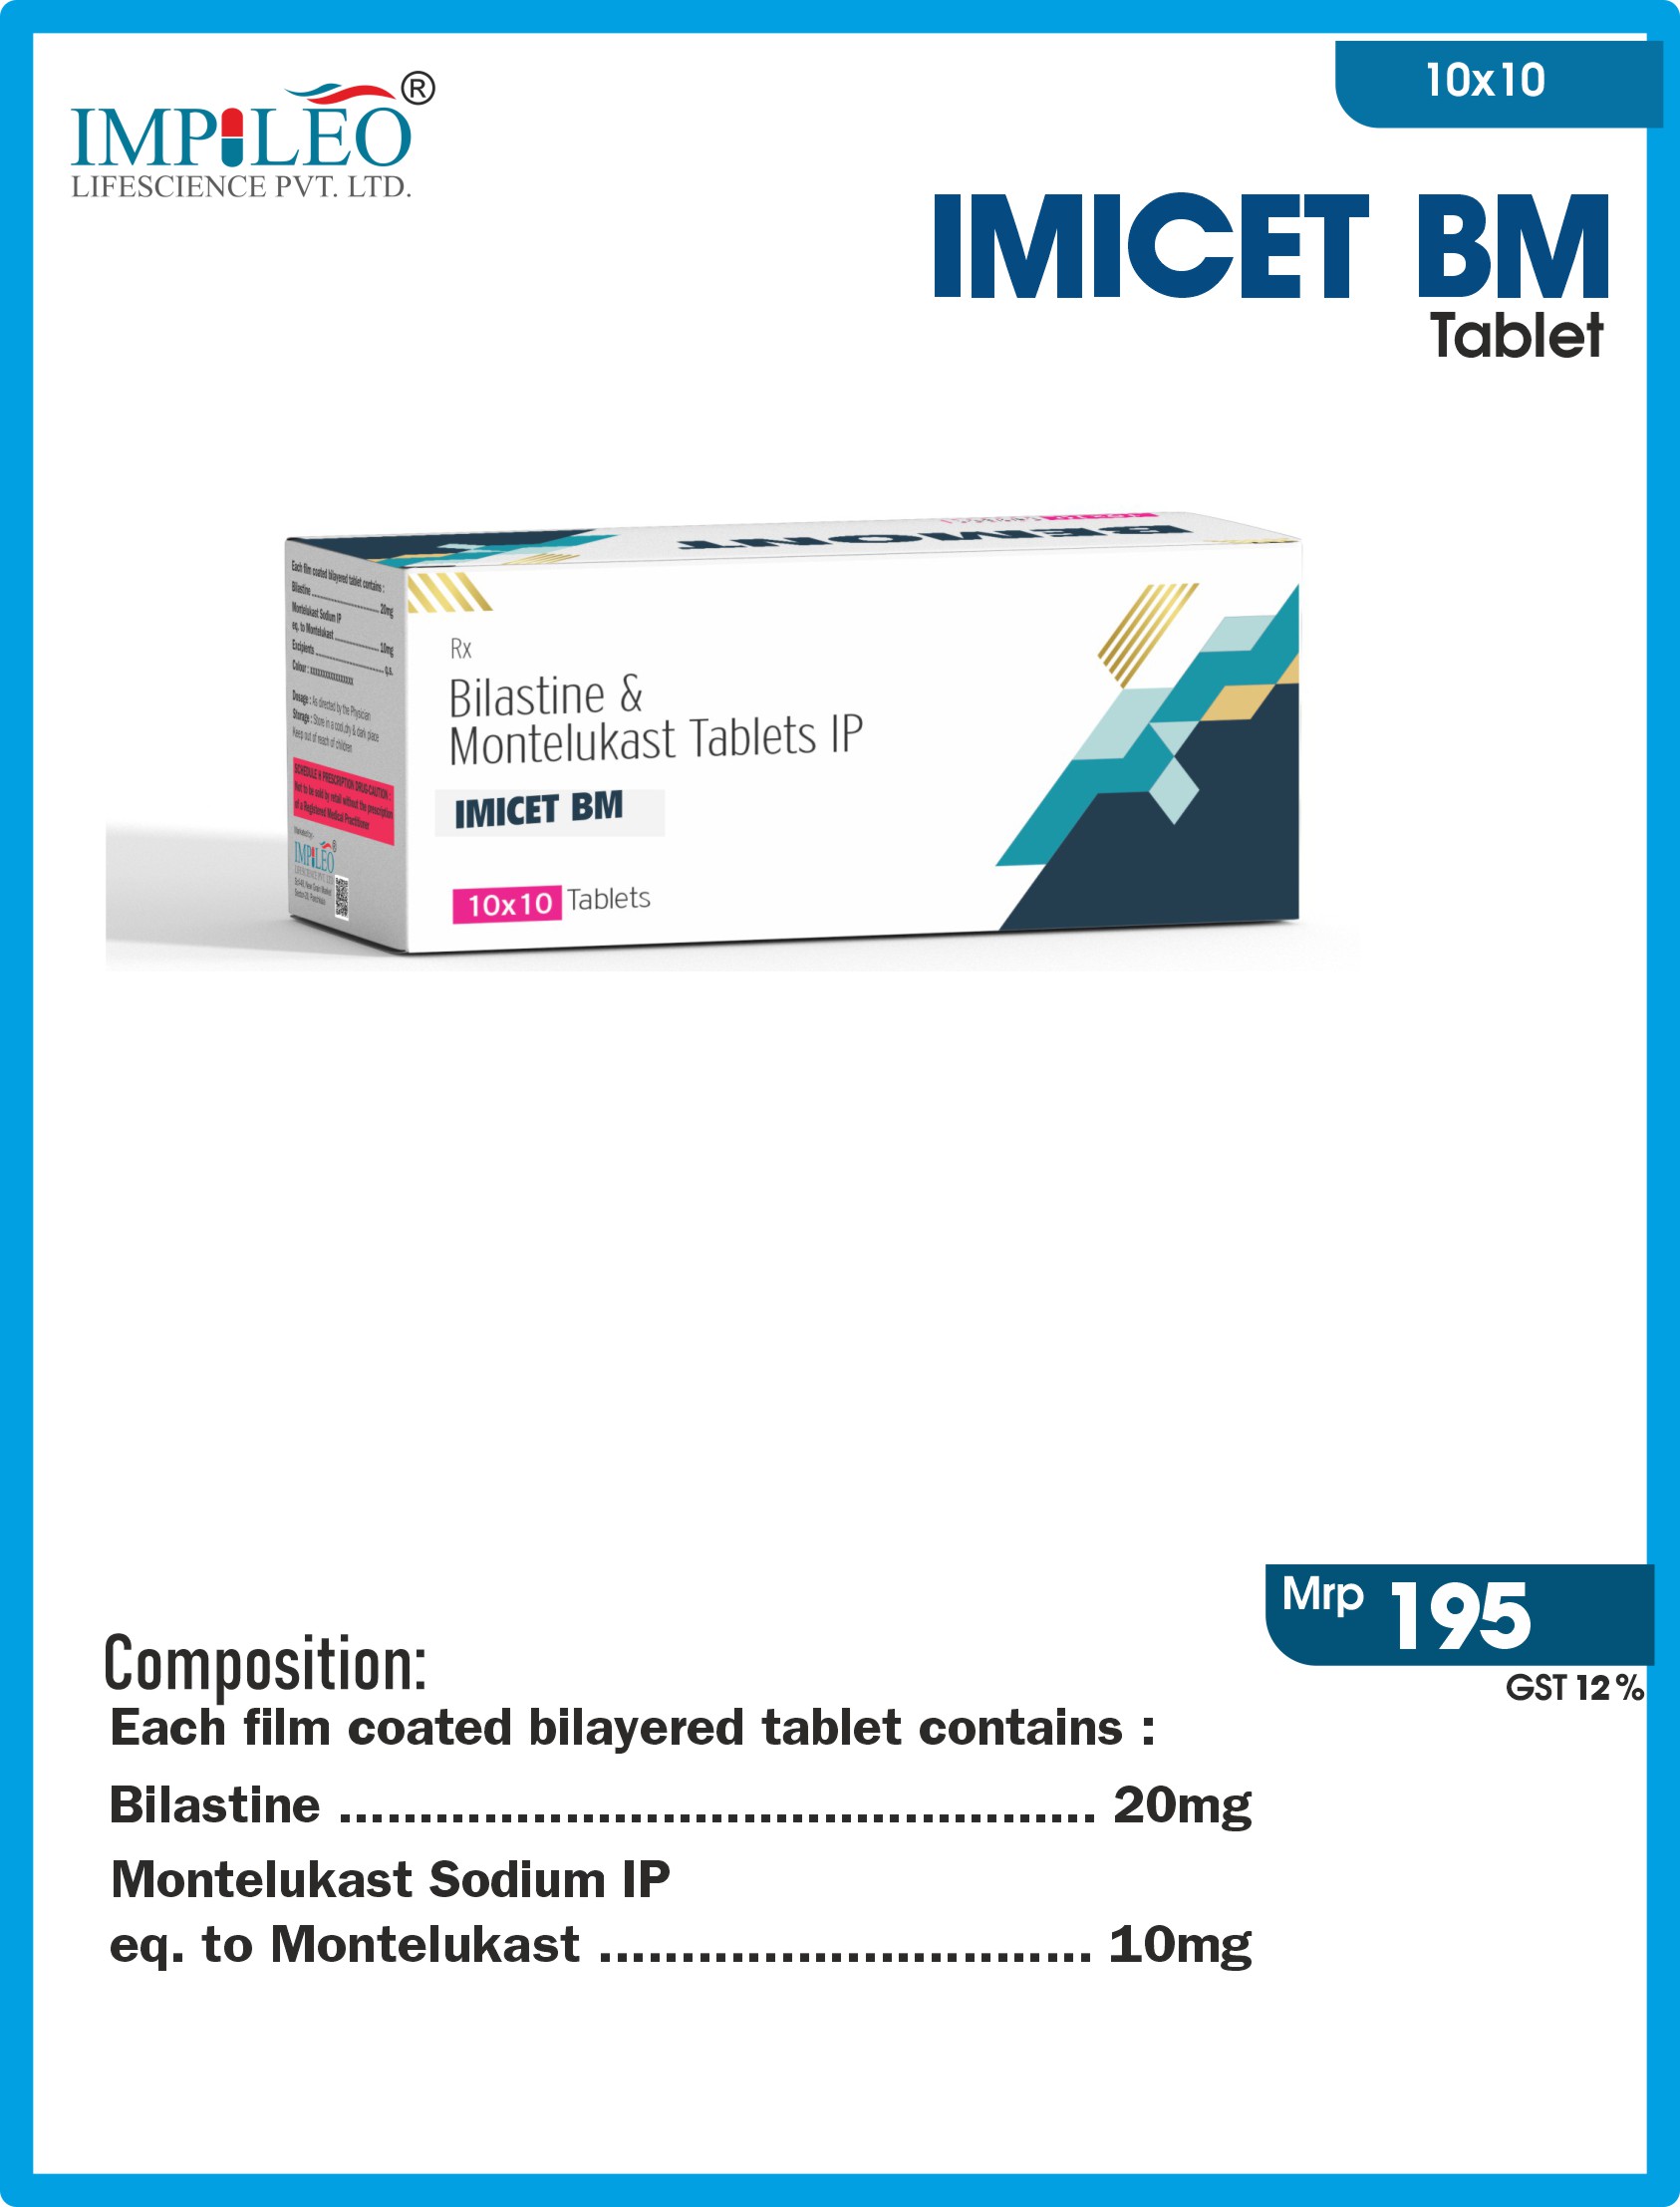 Bilastine + Montelukast Tablets Imicet BM For PCD Pharma Franchise